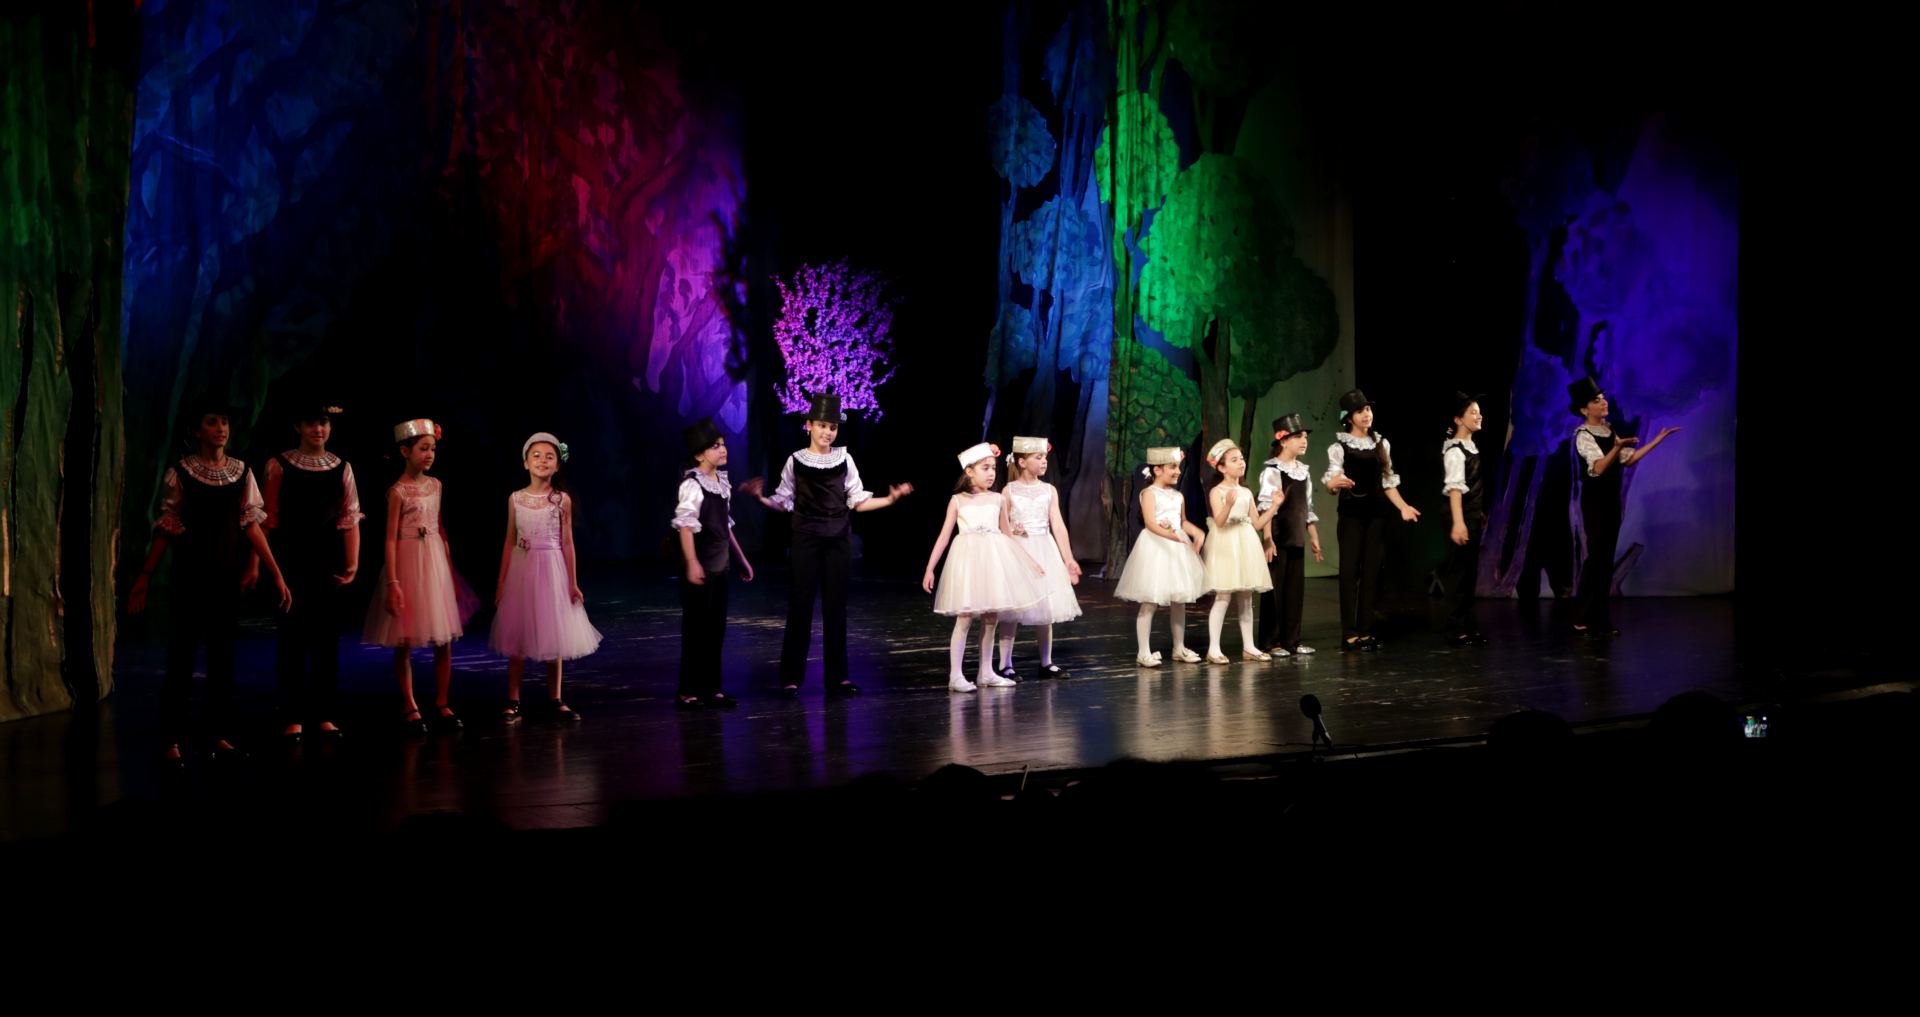 Dövlət Uşaq Filarmoniyasında “Sizi gözləyirik” adlı konsert proqramı baş tutub (FOTO)